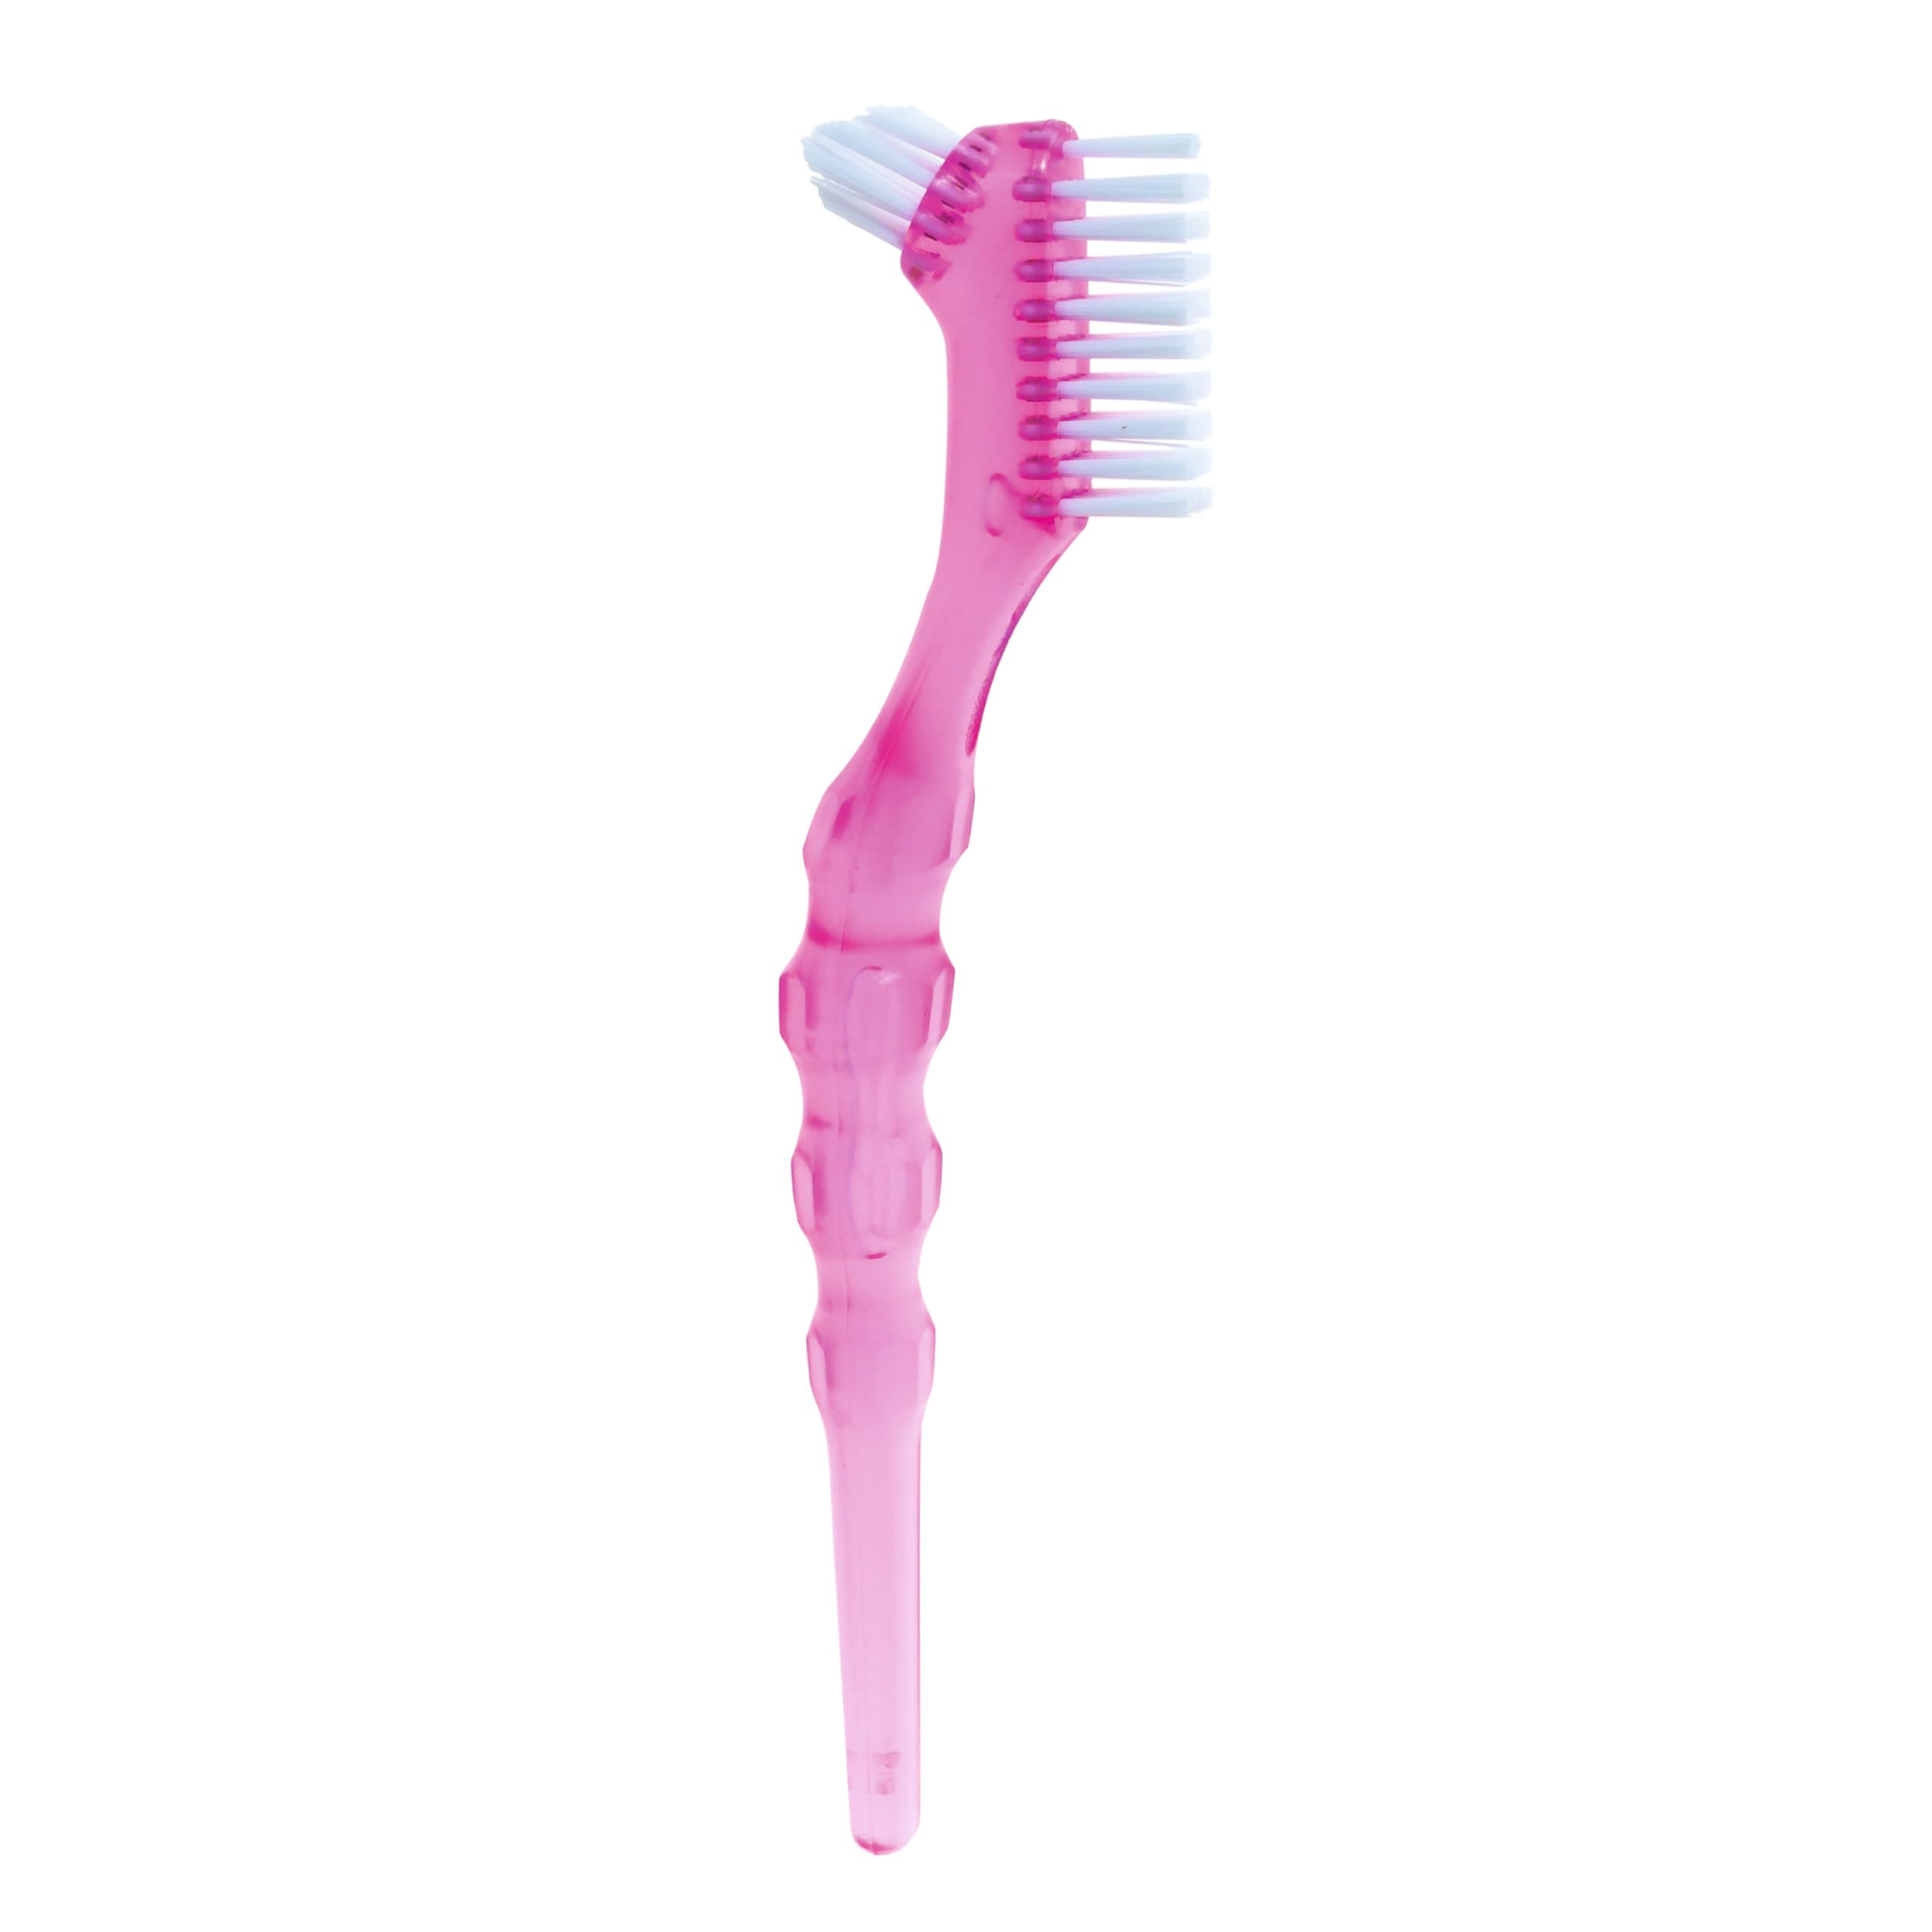 Зубная щетка Miradent Protho Brush для ухода за зубными протезами, pозовая